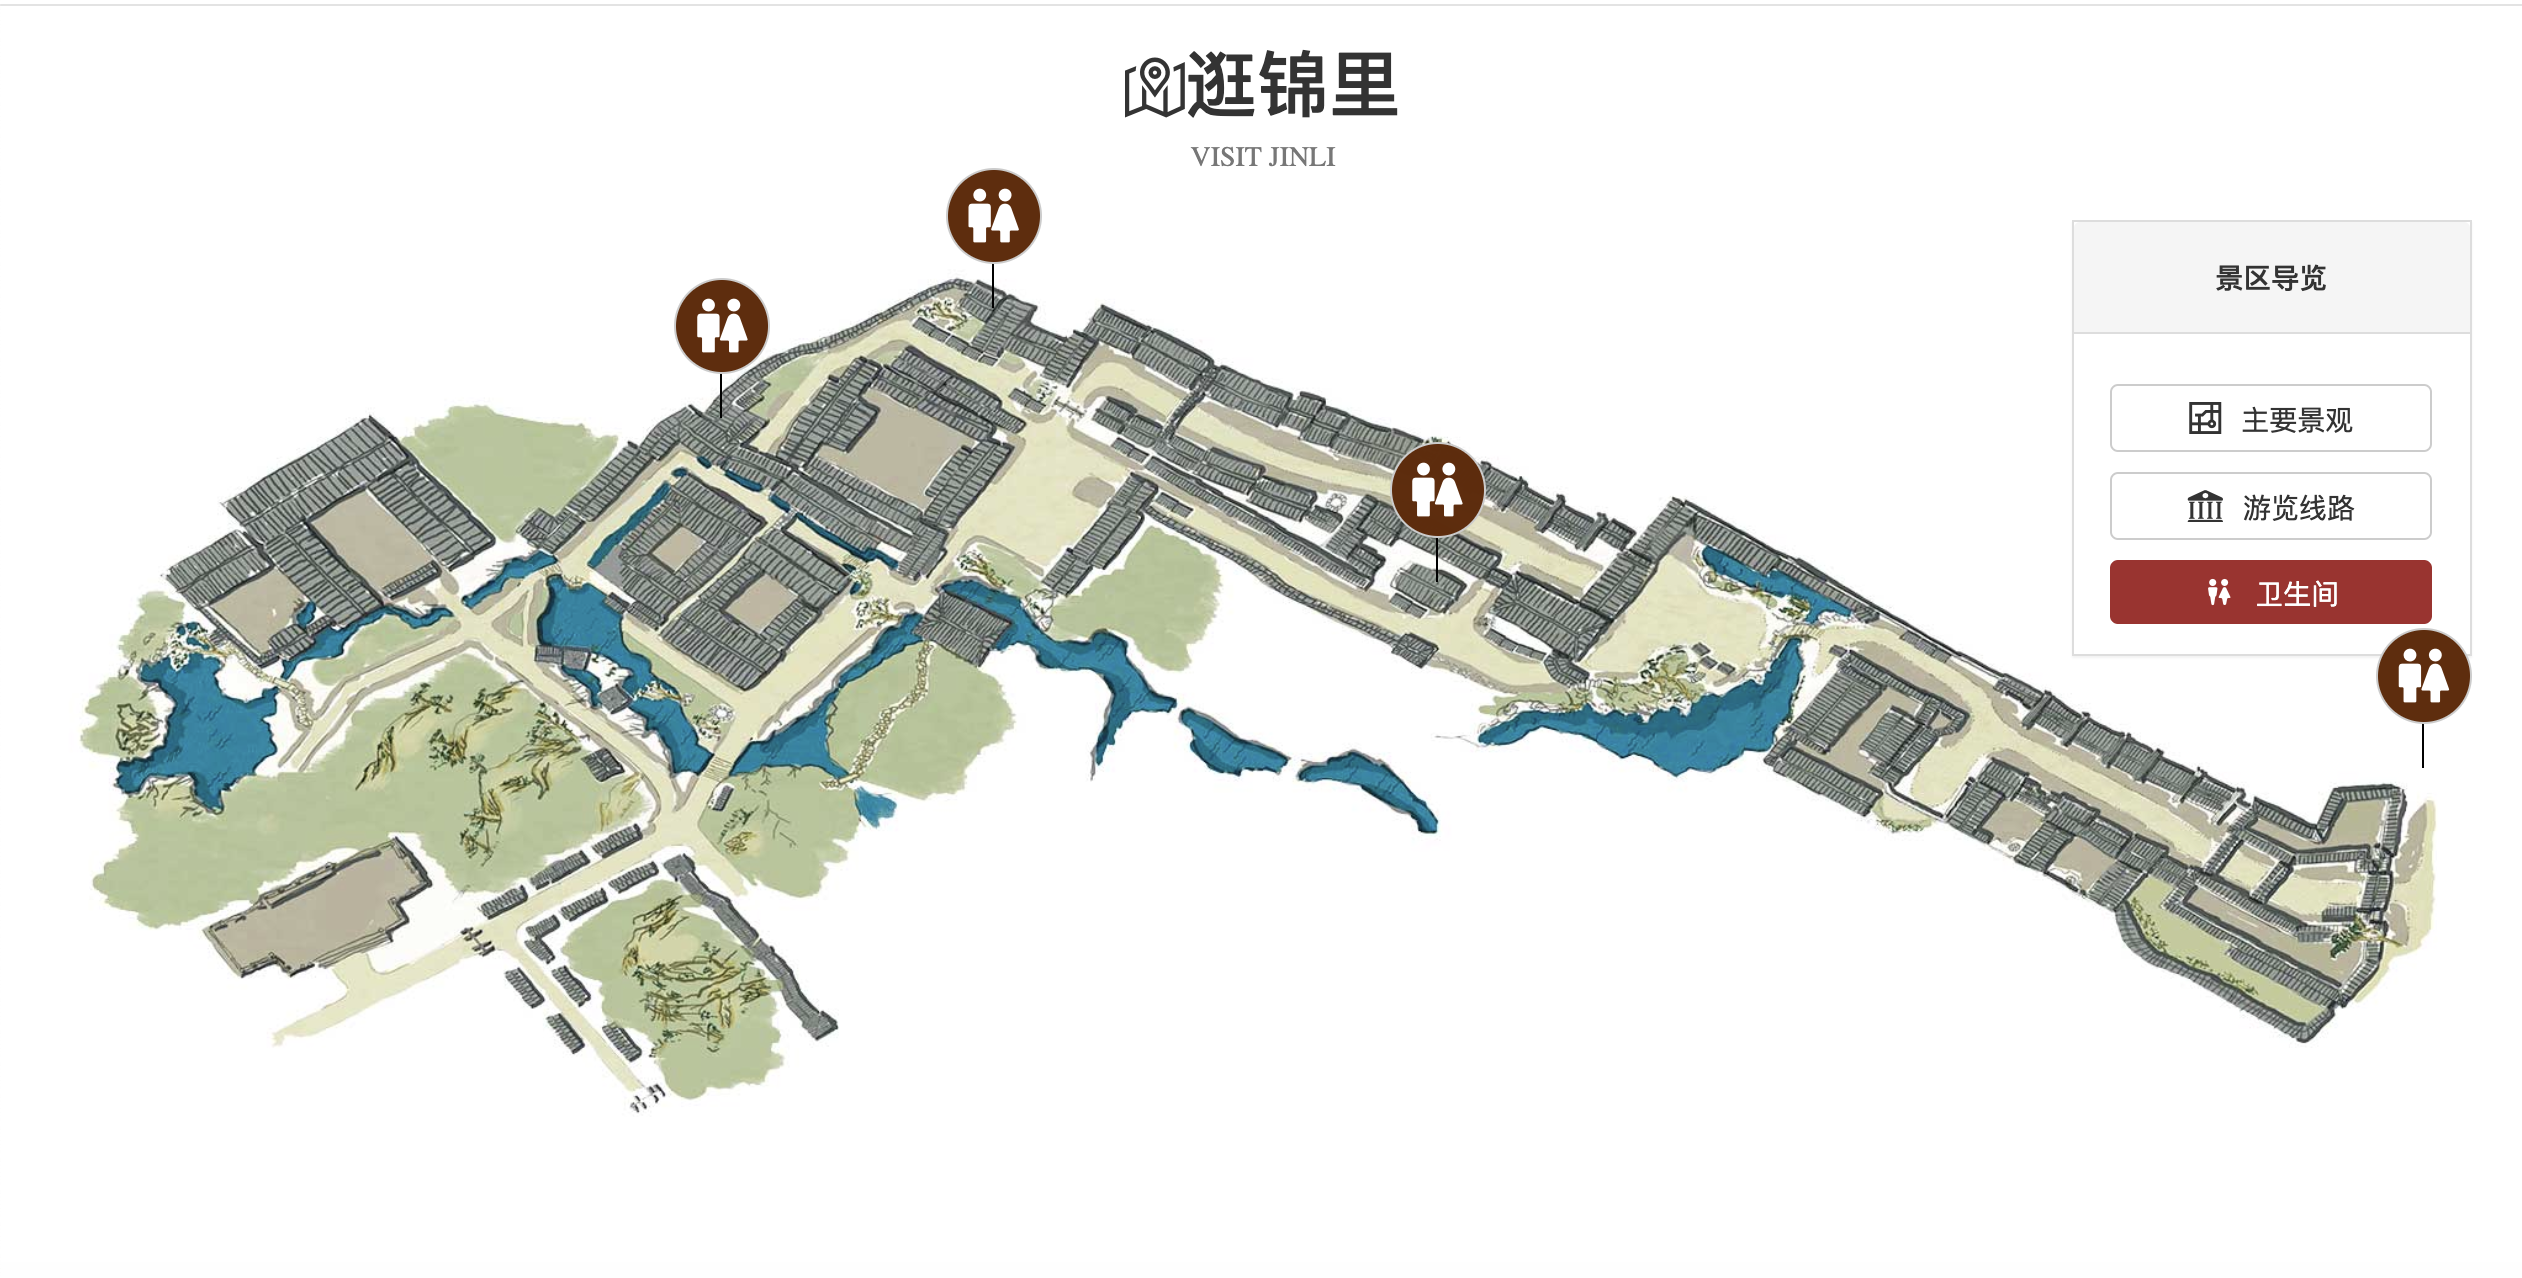 上图为锦里游览线路上图为锦里景点分布图逛锦里· 商户营业时间:9:00